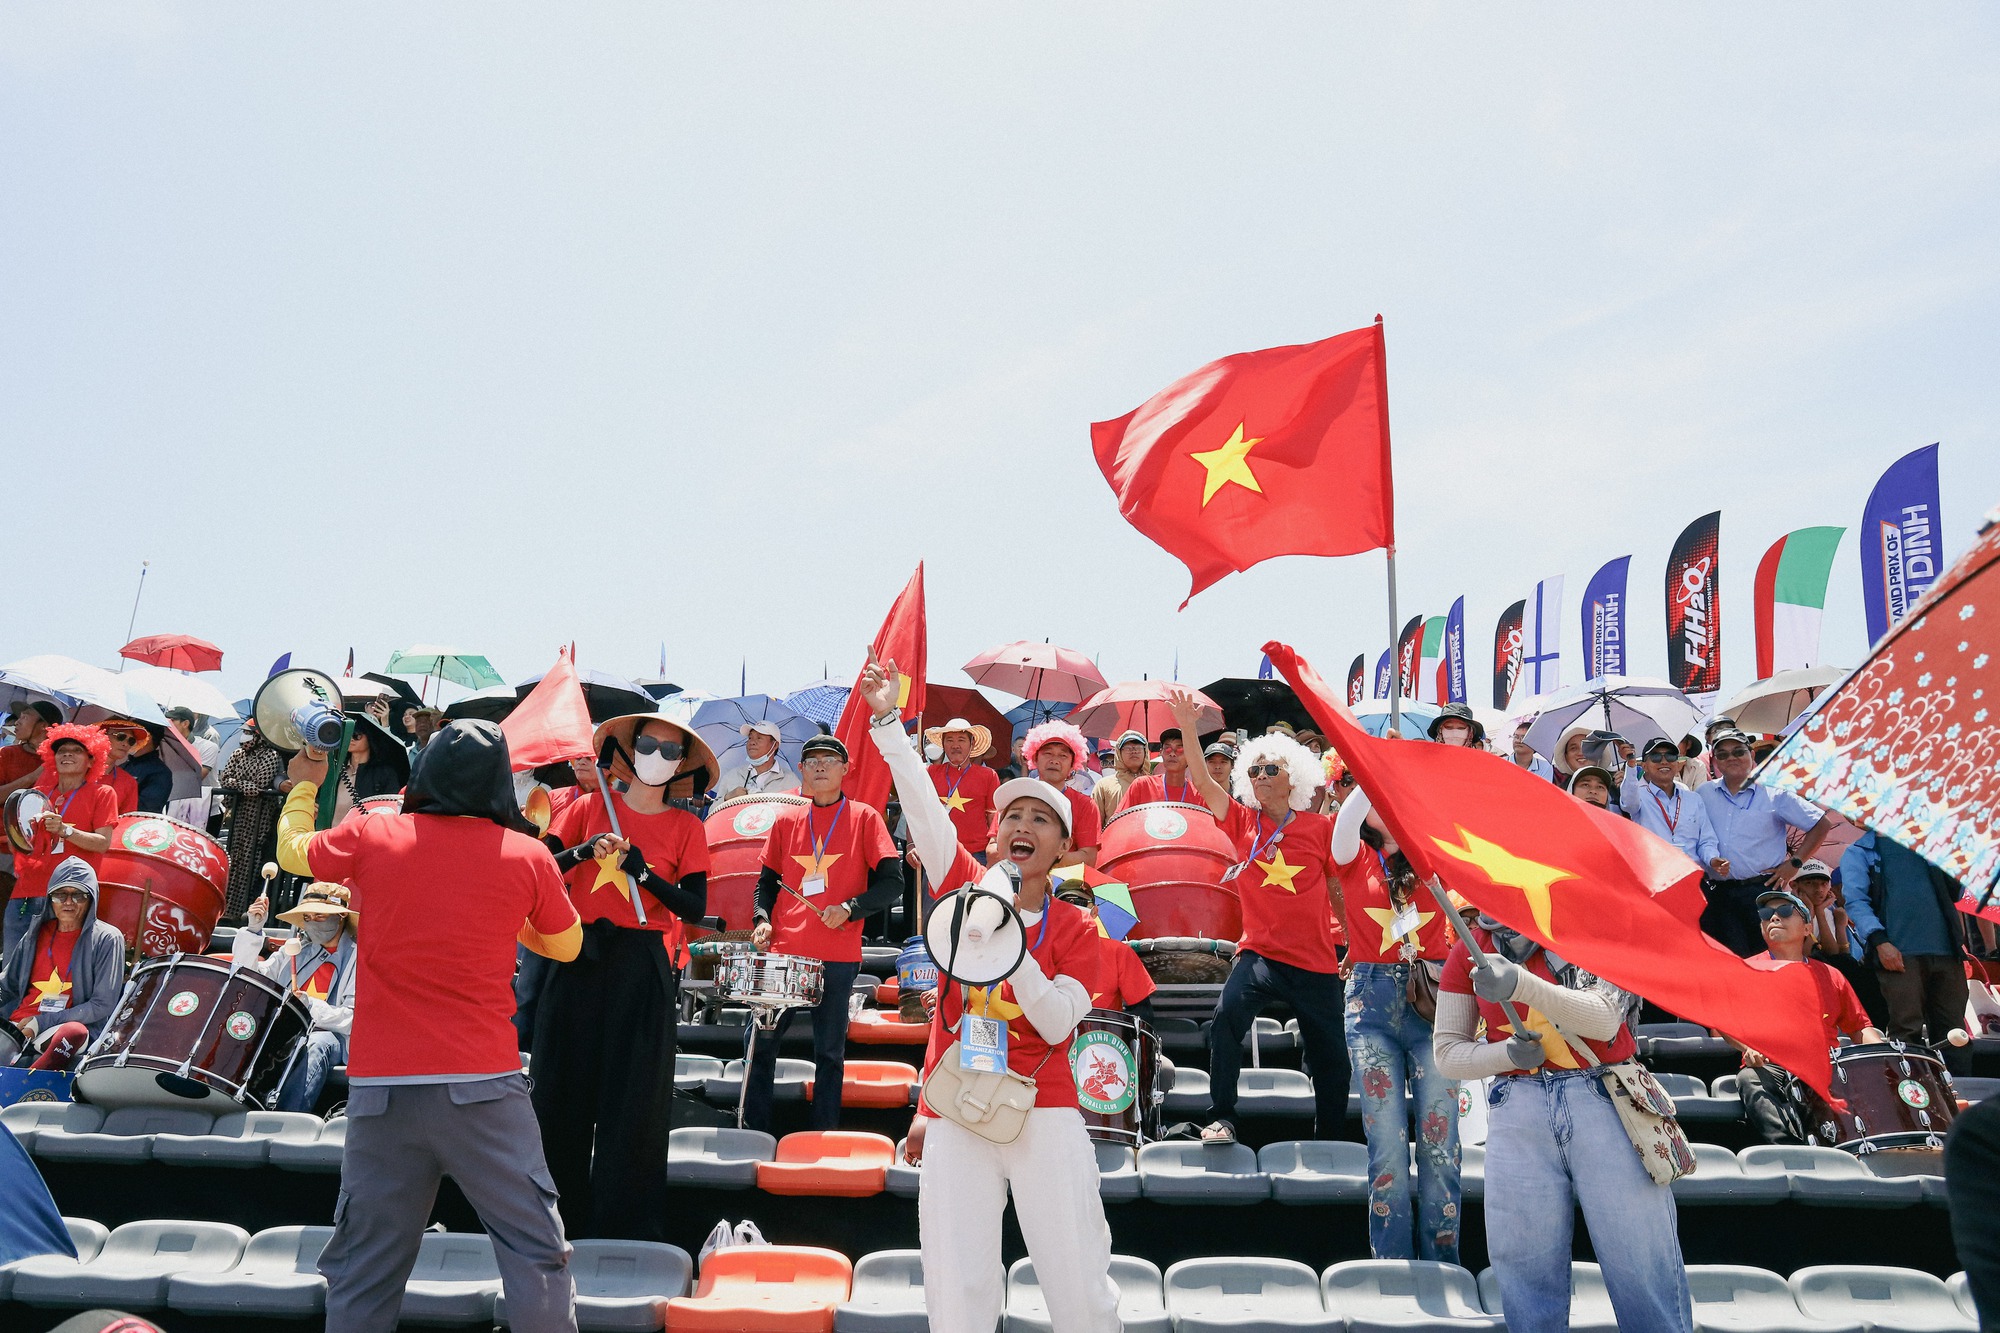 18 tay đua thuyền máy F1 tranh tài: "Cảm ơn Quy Nhơn xinh đẹp, Bình Định hiếu khách và Việt Nam tuyệt vời"- Ảnh 4.